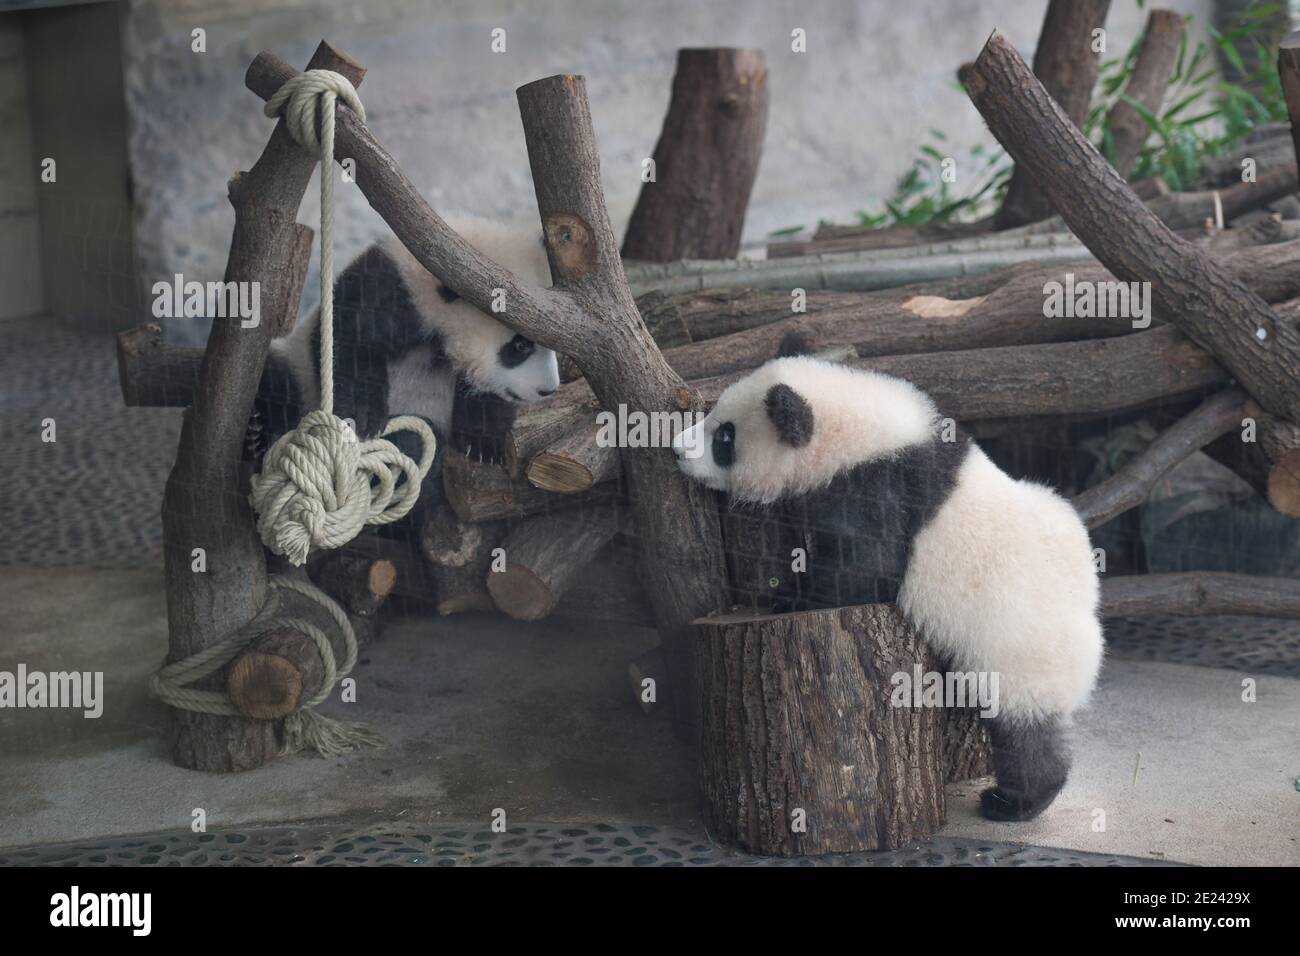 Berlin, 14.02.2020: Zwei Wochen nach dem Einzug der Pandas in ihr neues Gehege kehrt Normalität ein. Die Zwillinge Meng Xiang und Meng Yuan alias Pit Banque D'Images